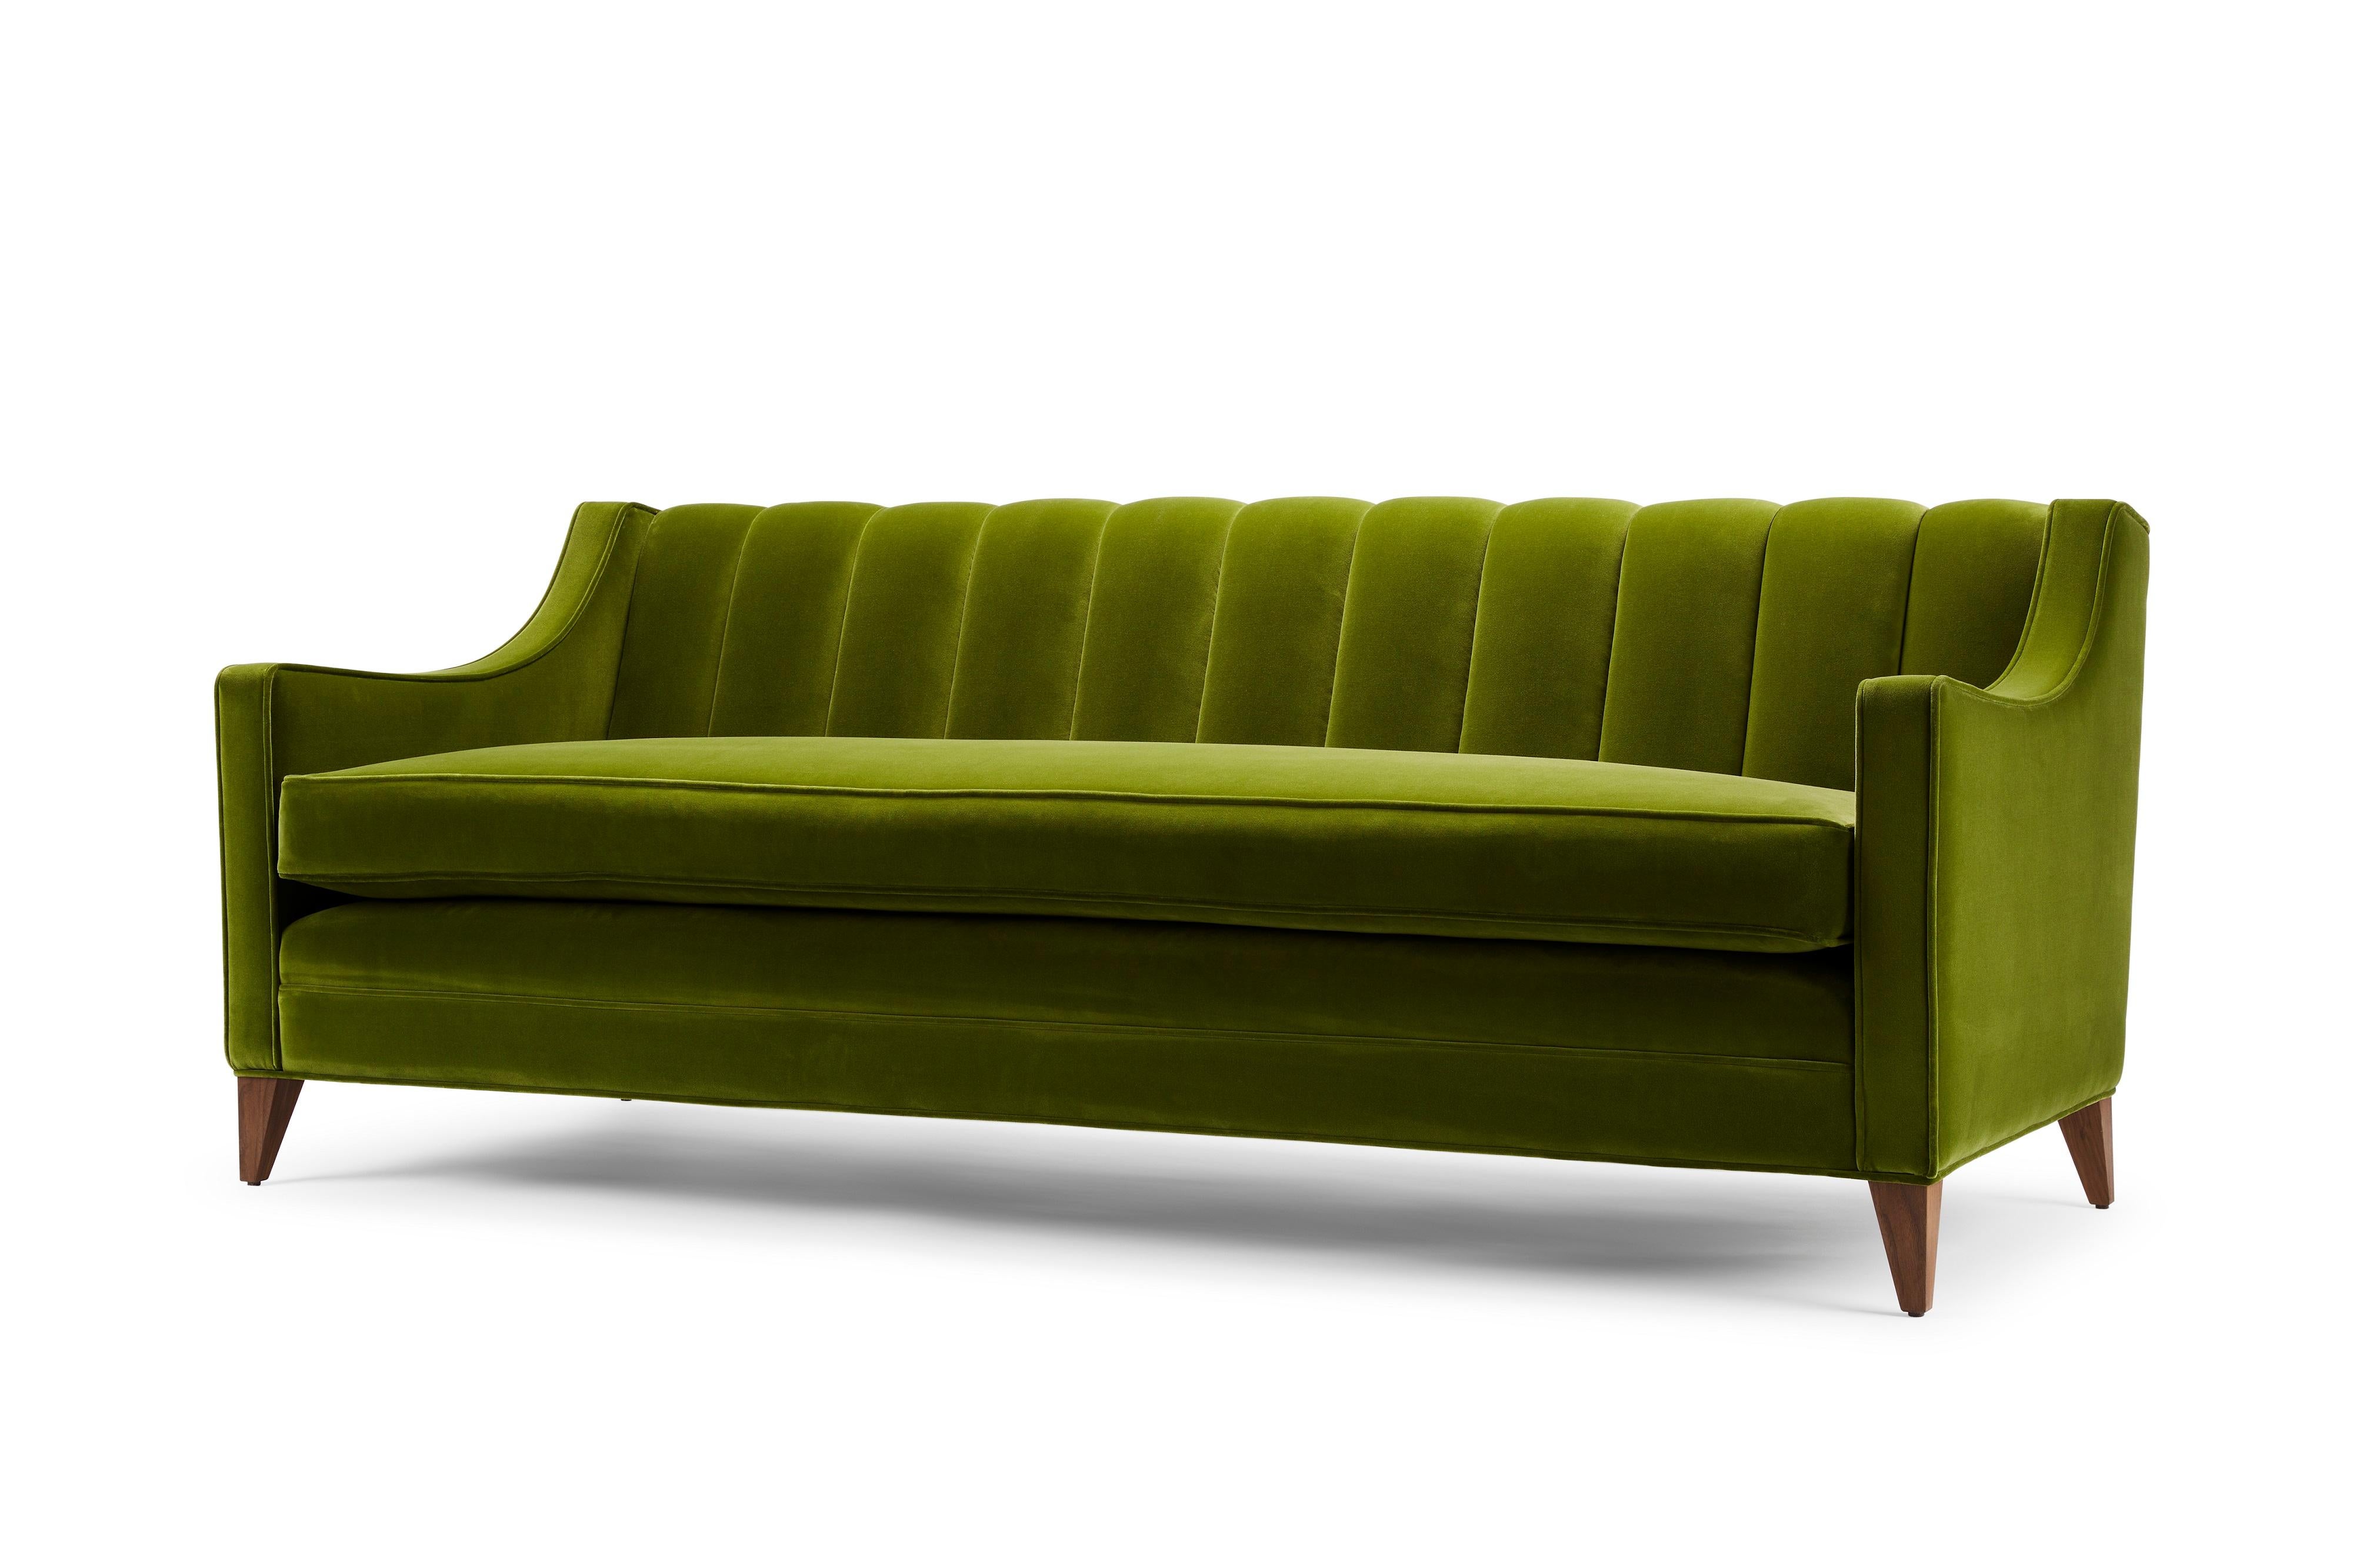 Das Sofa Fleure Luxus ist unsere neueste Adaption des preisgekrönten 3-Sitzer-Sofas Fleure, gepolstert mit hochwertigem Baumwollsamt. Die Fleure-Reihe verbindet traditionelle Stilelemente mit einer modernen Note. Der Luxus bietet mit seinem